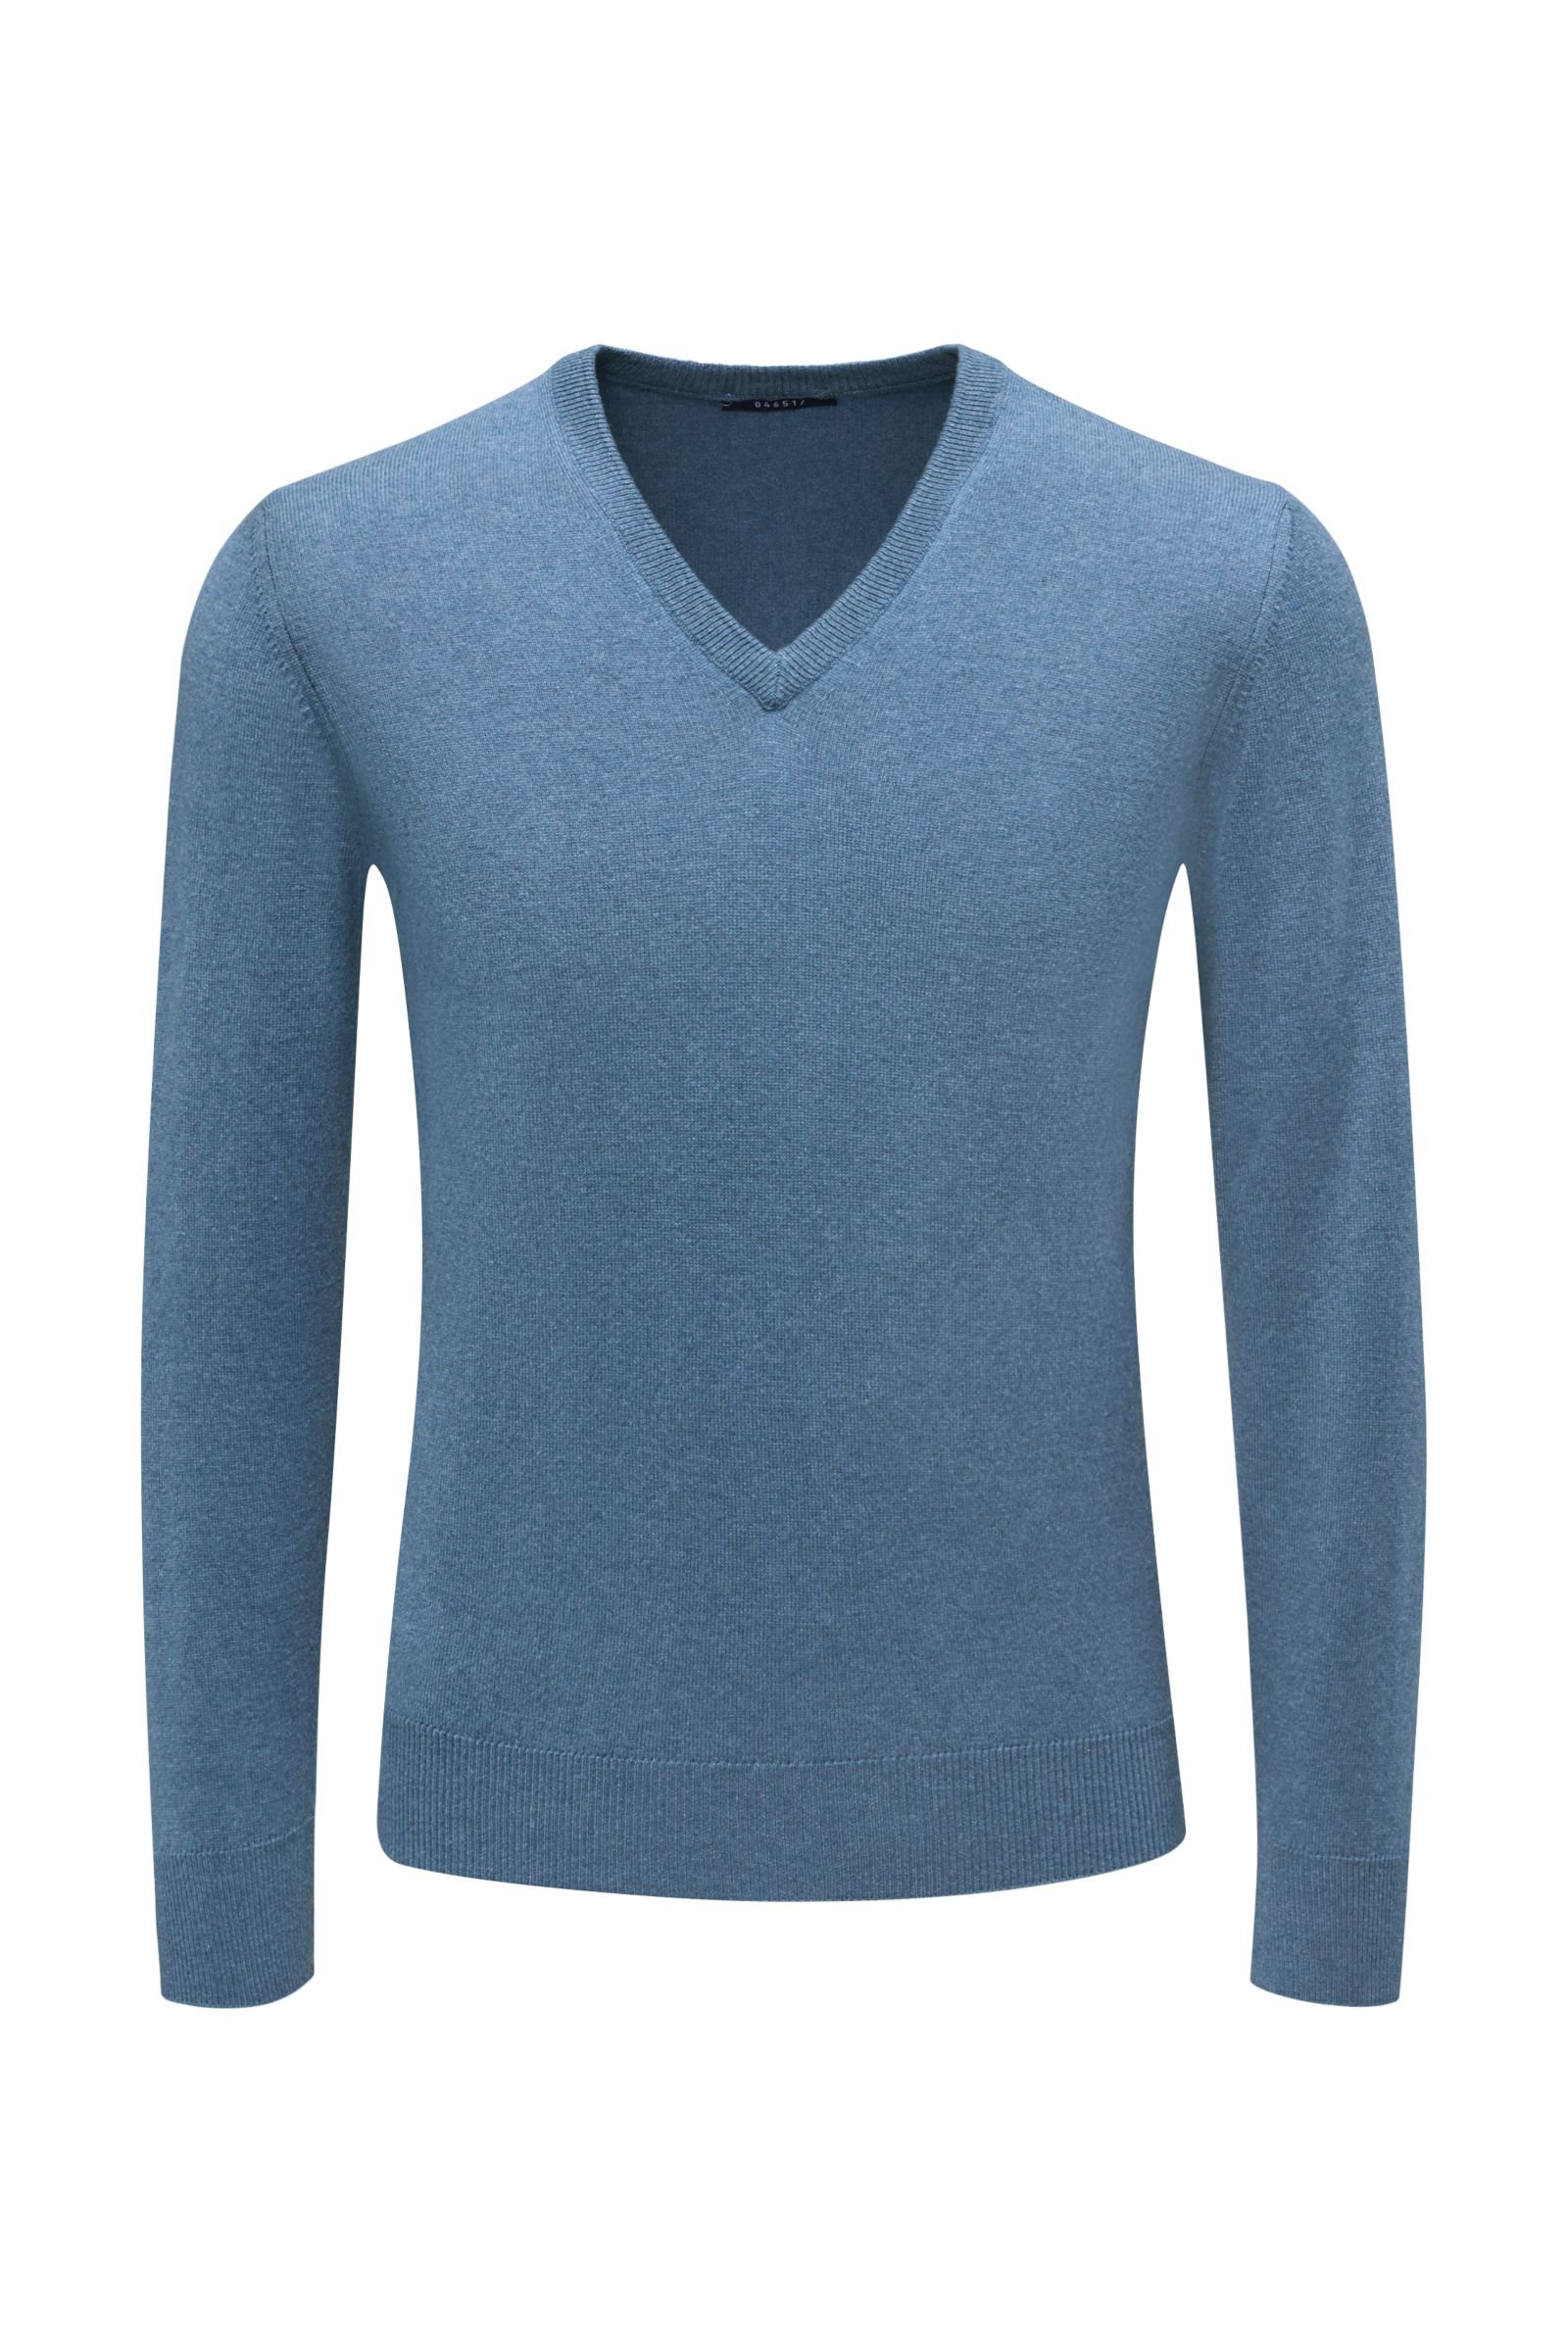 Cashmere V-neck jumper grey-blue